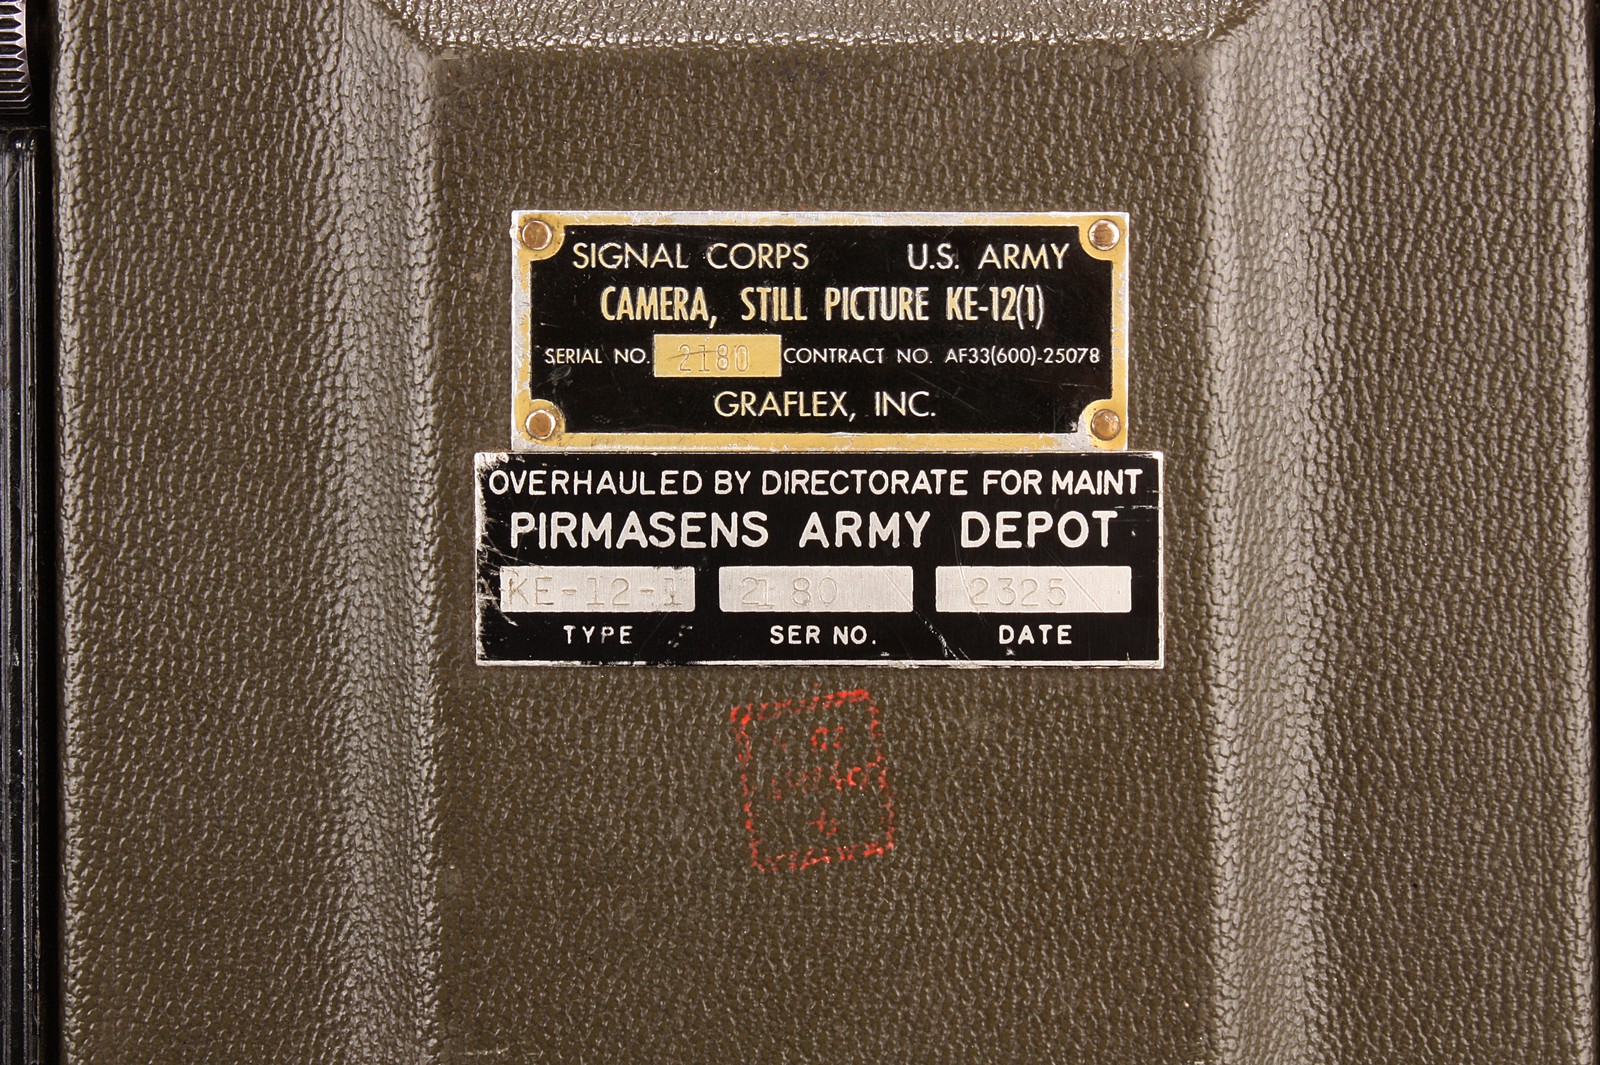 A Graflex Speed Graphic Signal Corps U.S. Army KE-12-1 Camera, green, serial no. 892576, military - Image 2 of 7